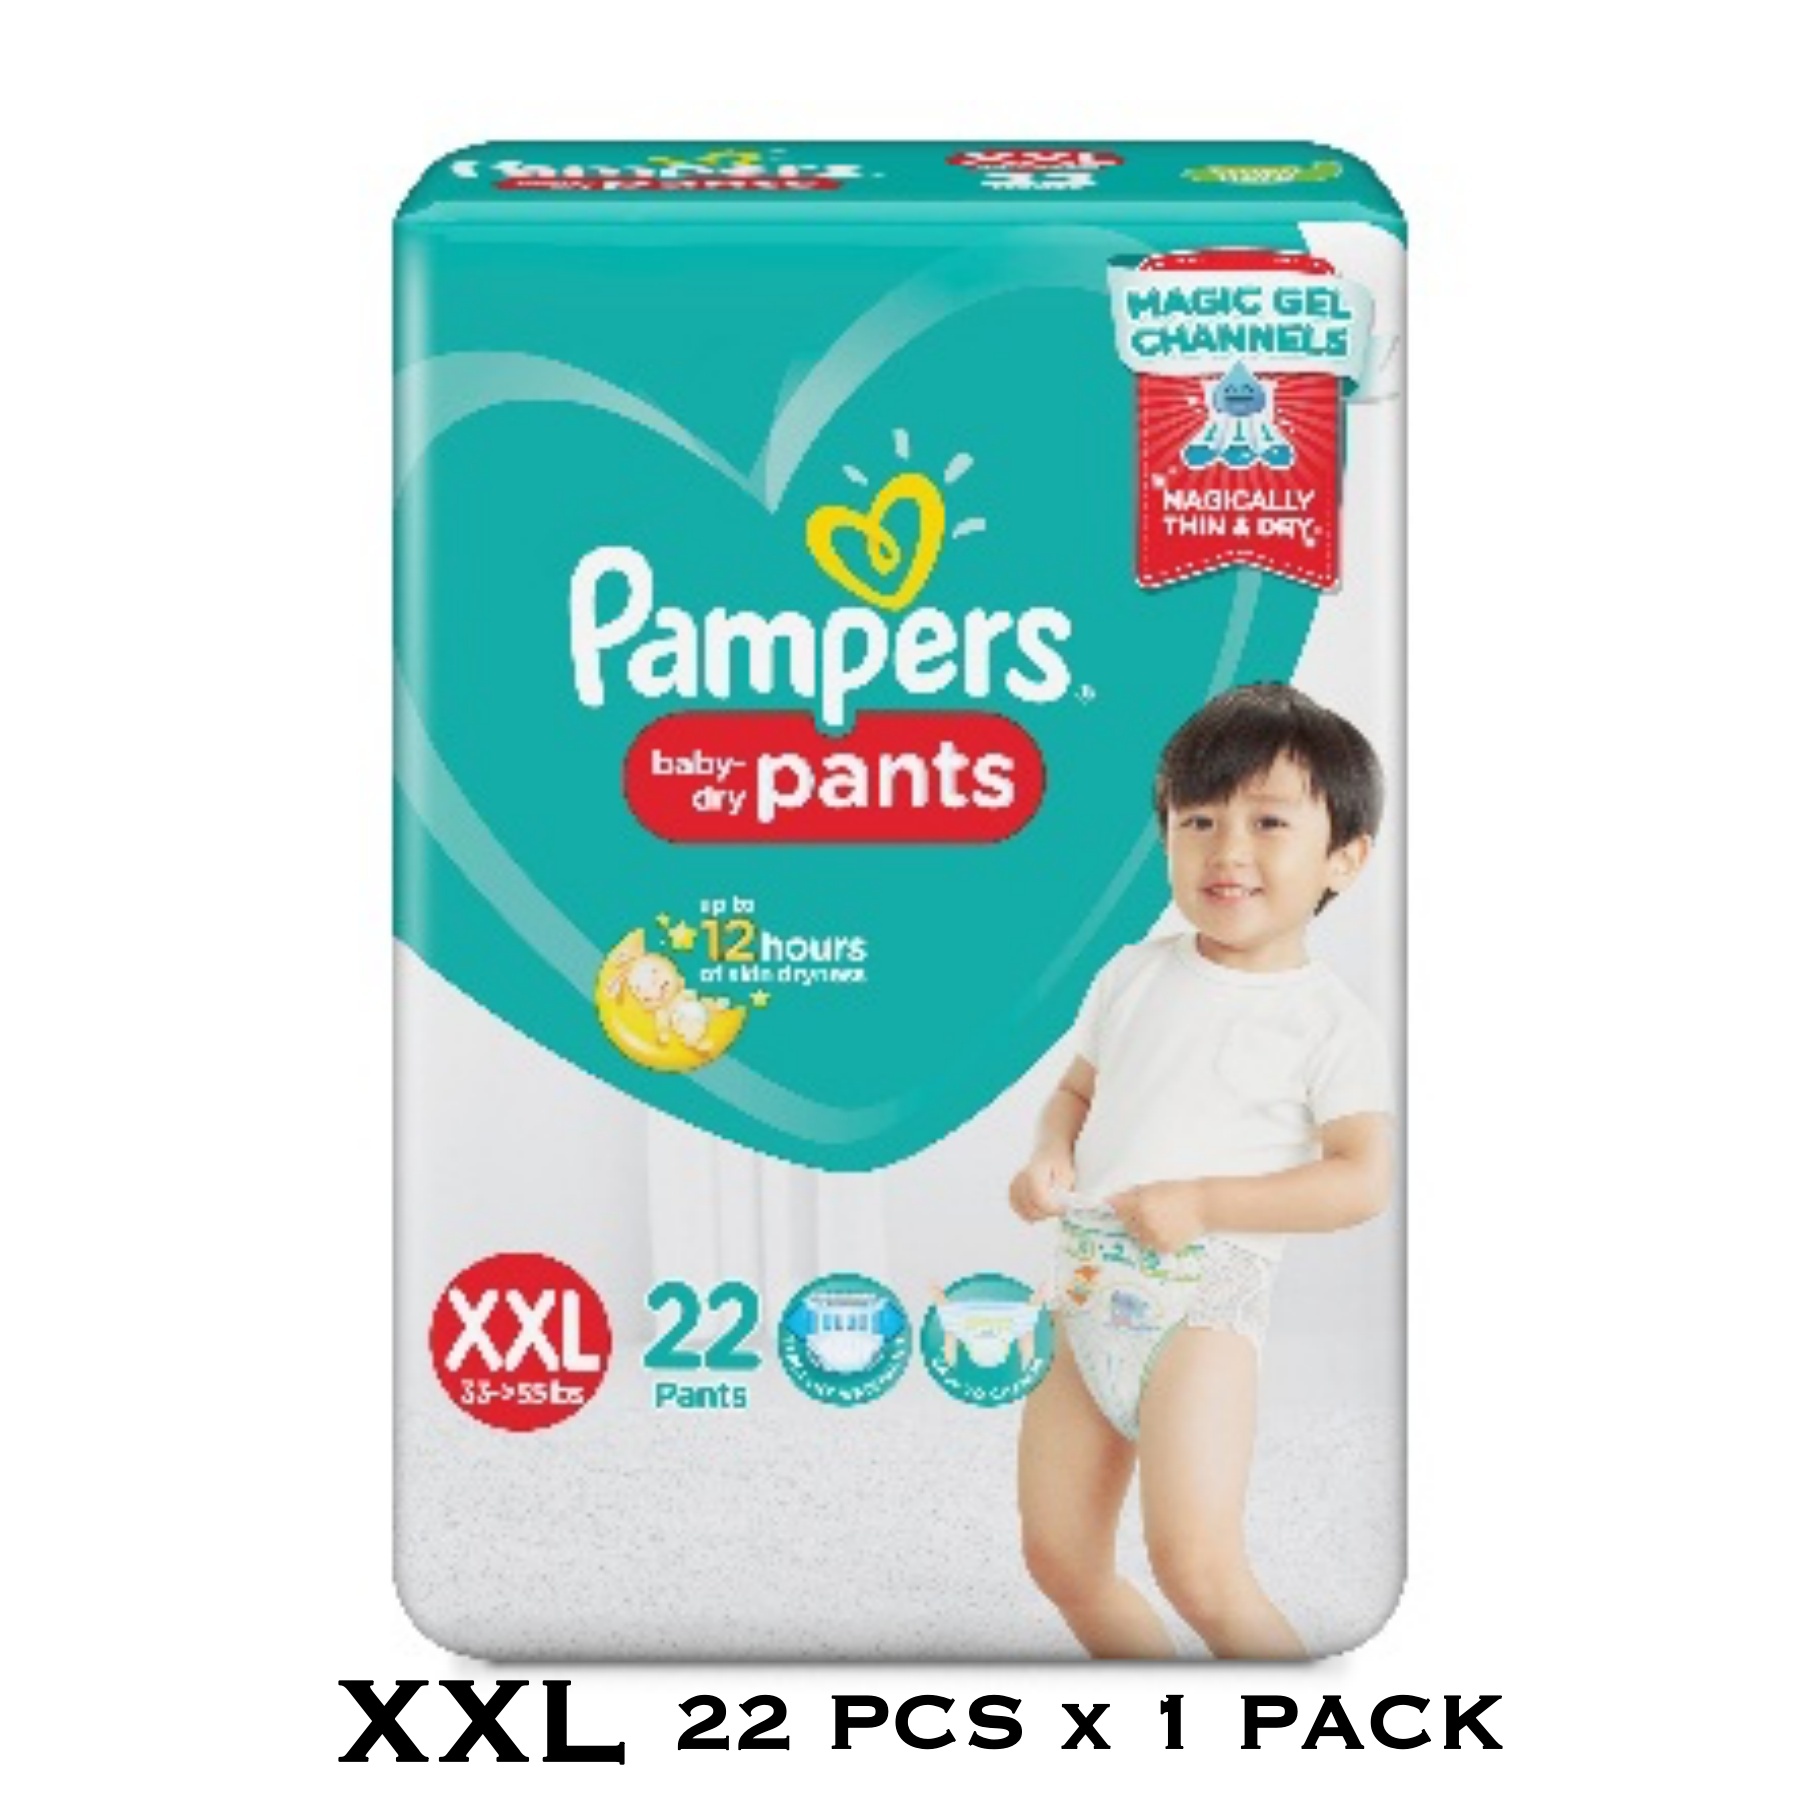 Schipbreuk Winkelier Inzichtelijk 22 PCS x 1 PACK Pampers Baby Dry XXLarge (XXL) 35-55 lbs Diaper Pants |  Lazada PH